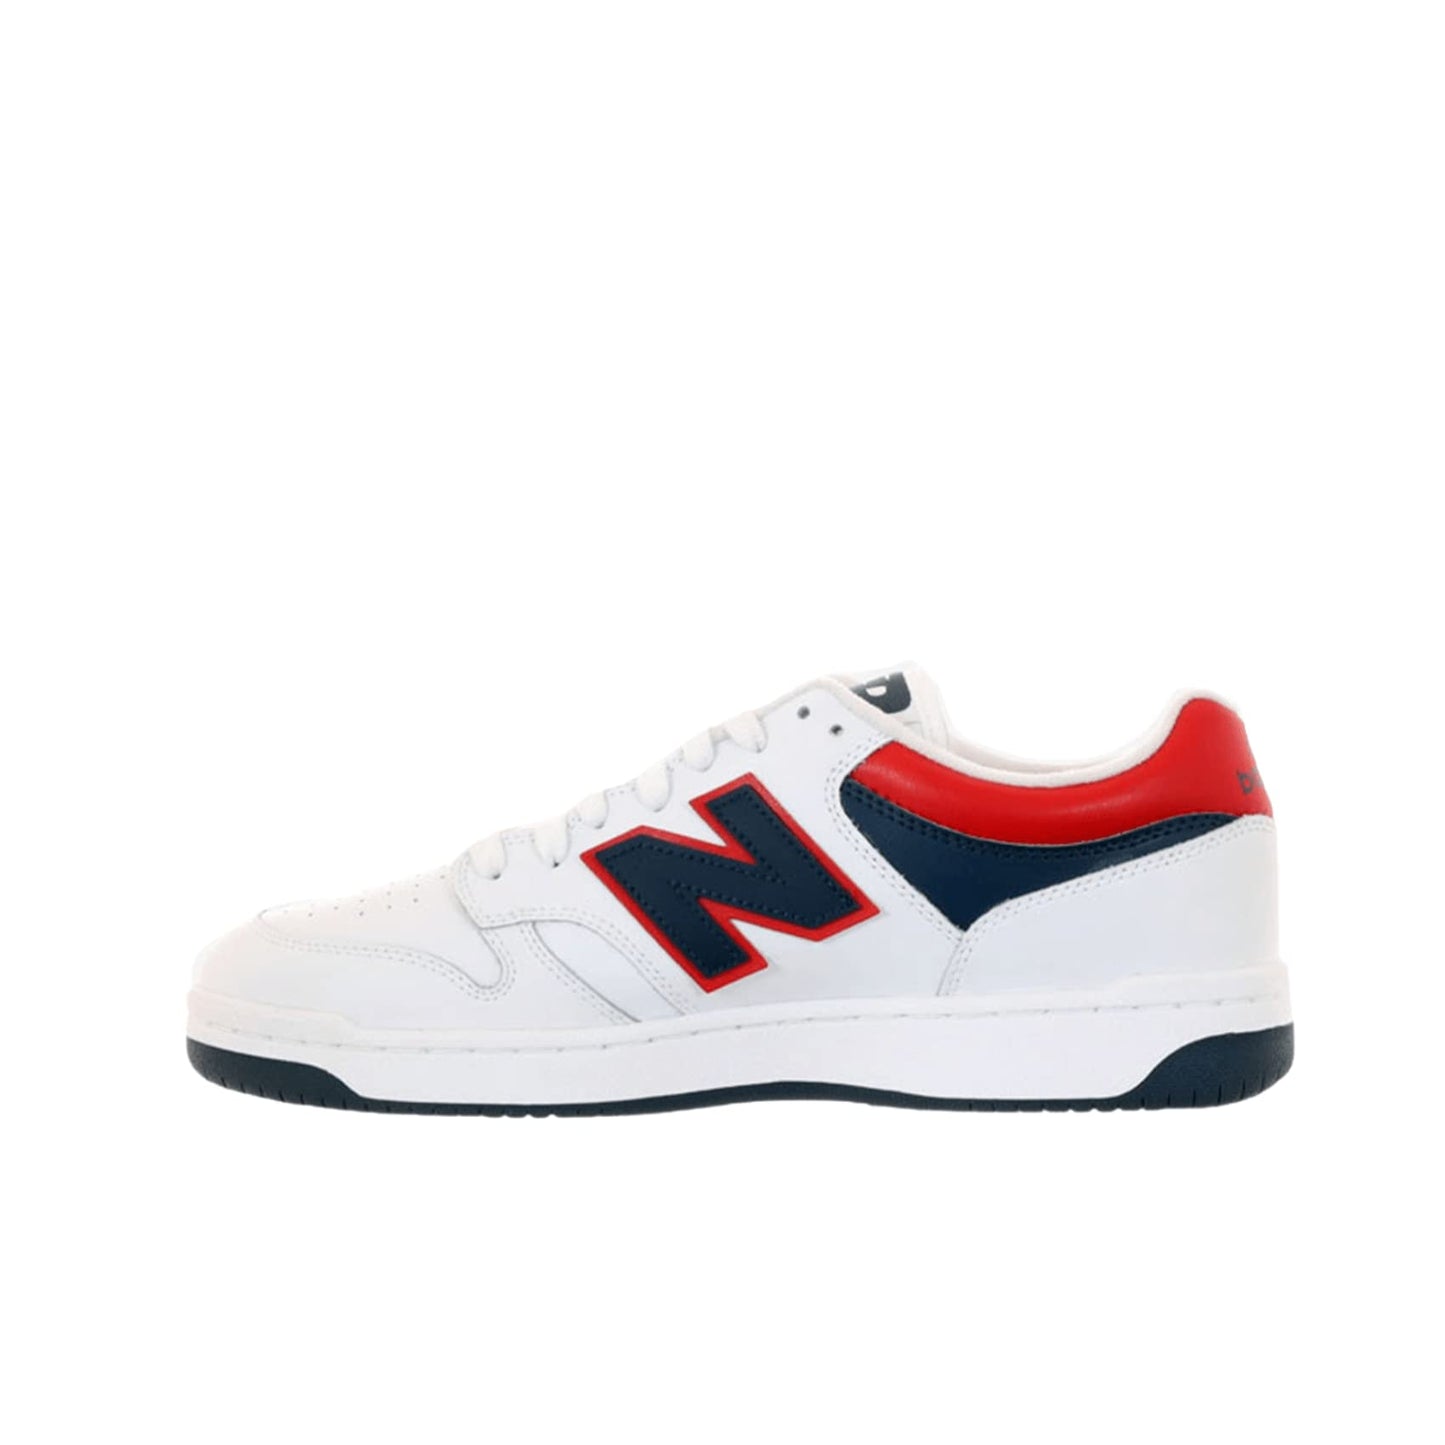 New Balance Unisex-Adult BB480 V1 Sneaker, White/Natural Indigo/Team Red, 16